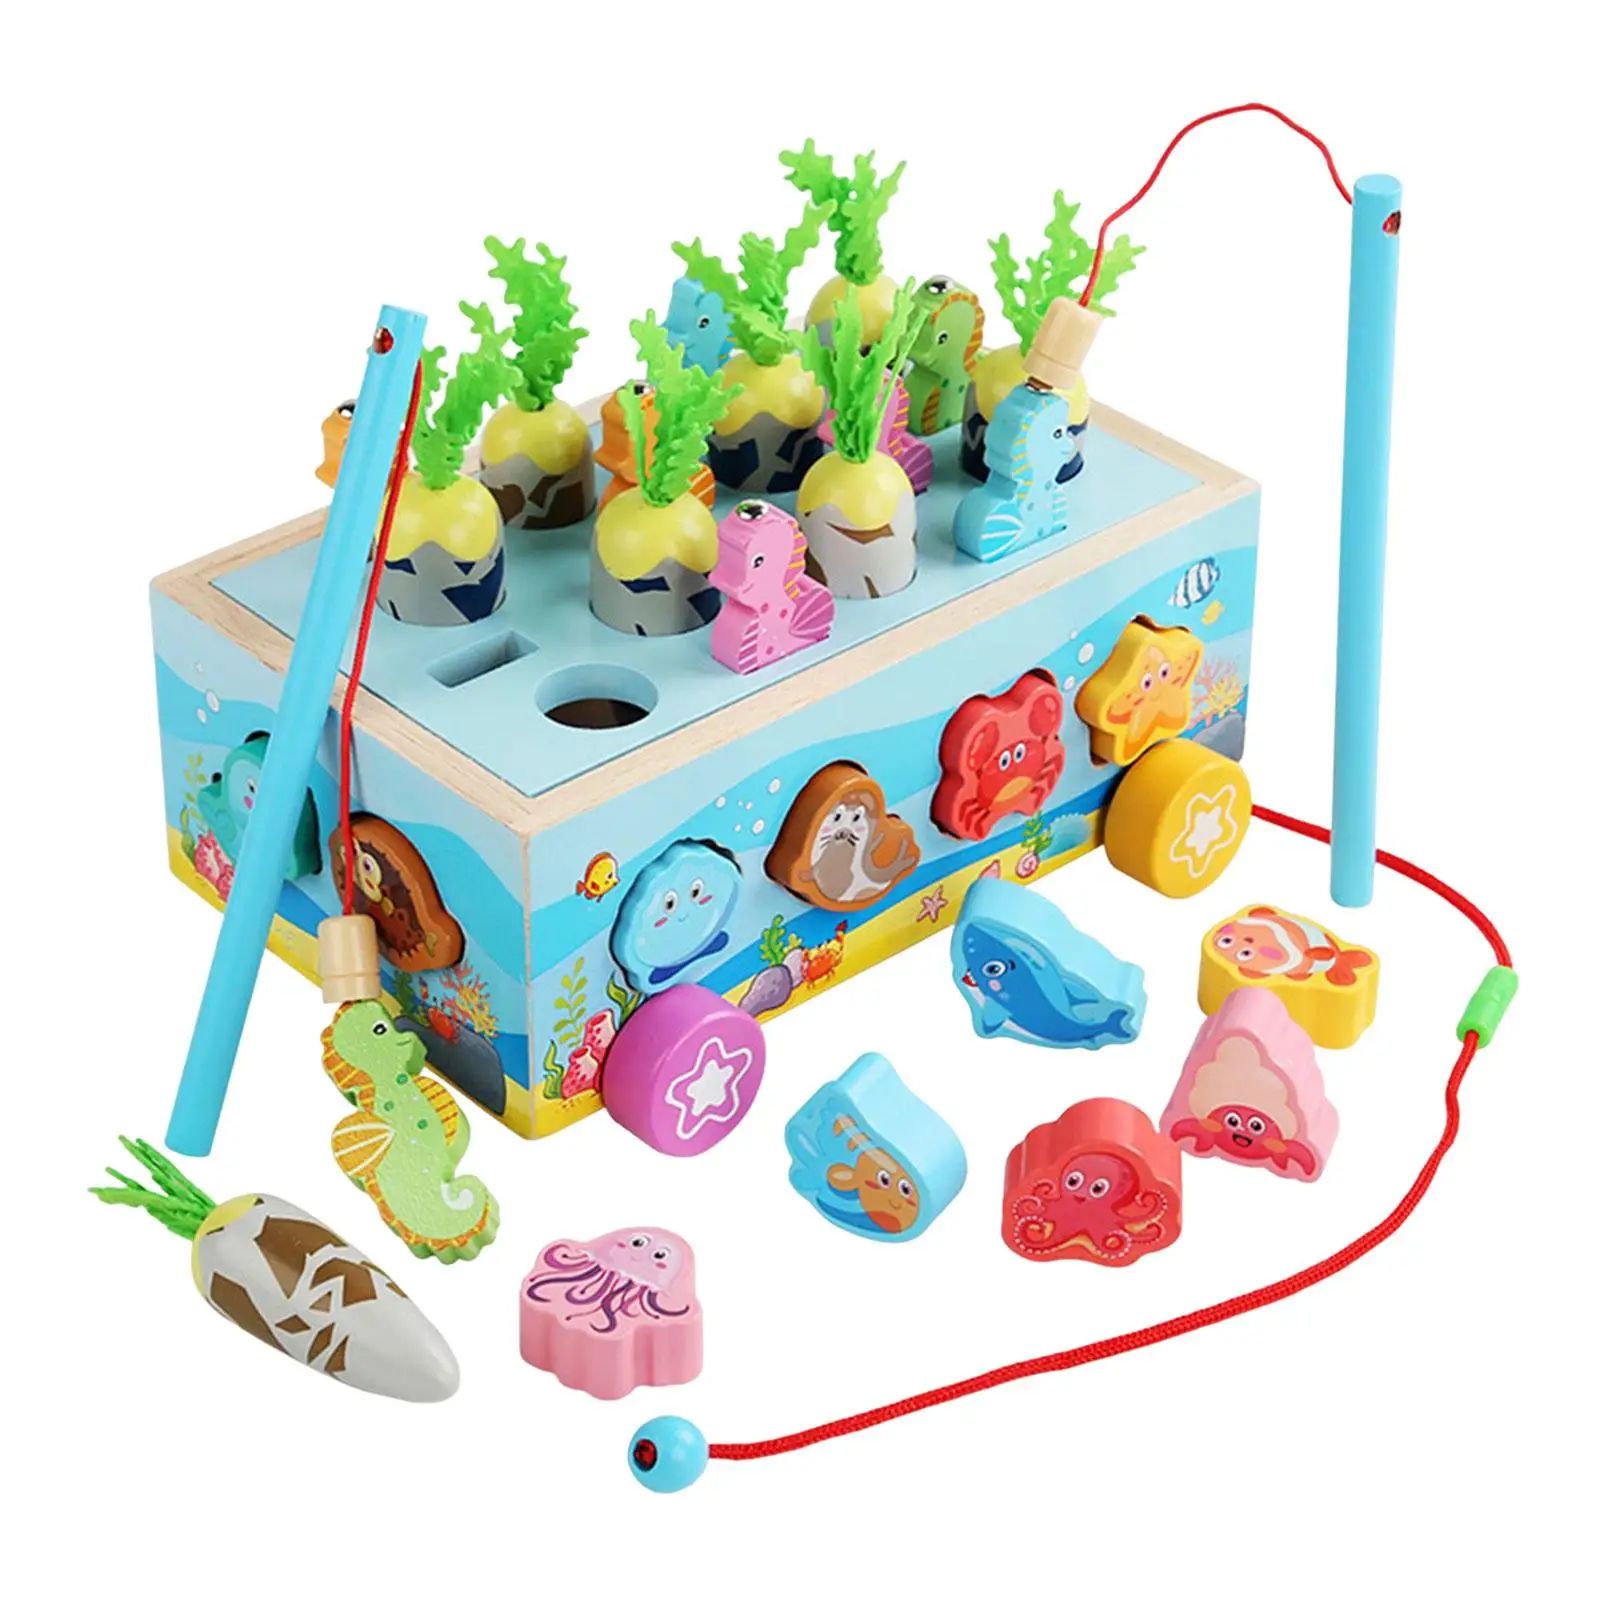 Wooden Shape Sorter Toys Preschool Learning Toys Fine Motor Skills Fishing Game Car with Animal Blocks for Kids Toddler Gift